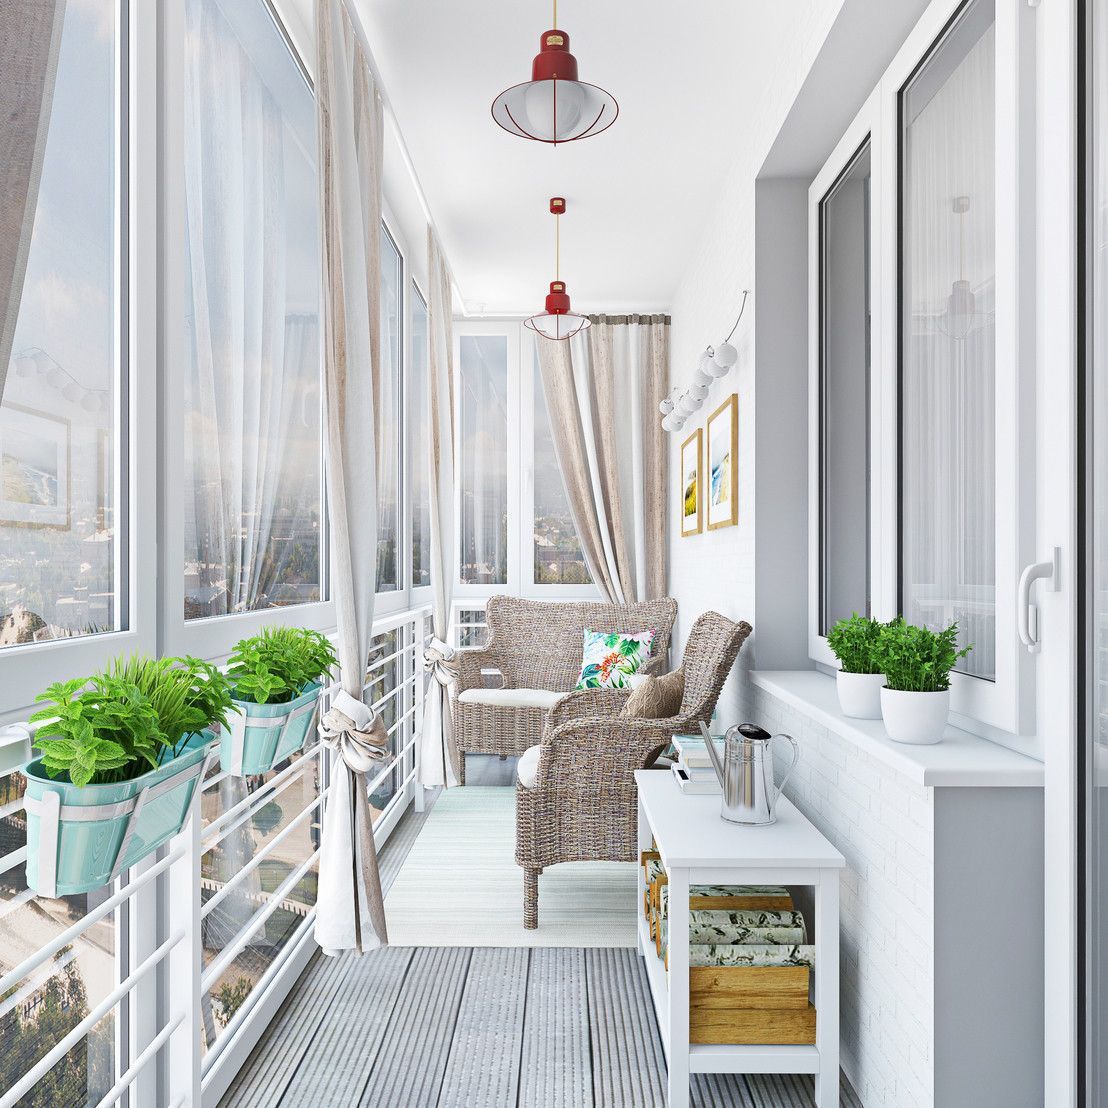 Як оформити балкон: 20 найкращих варіантів дизайну. Виберіть стильний інтер'єр для затишку вашої оселі.